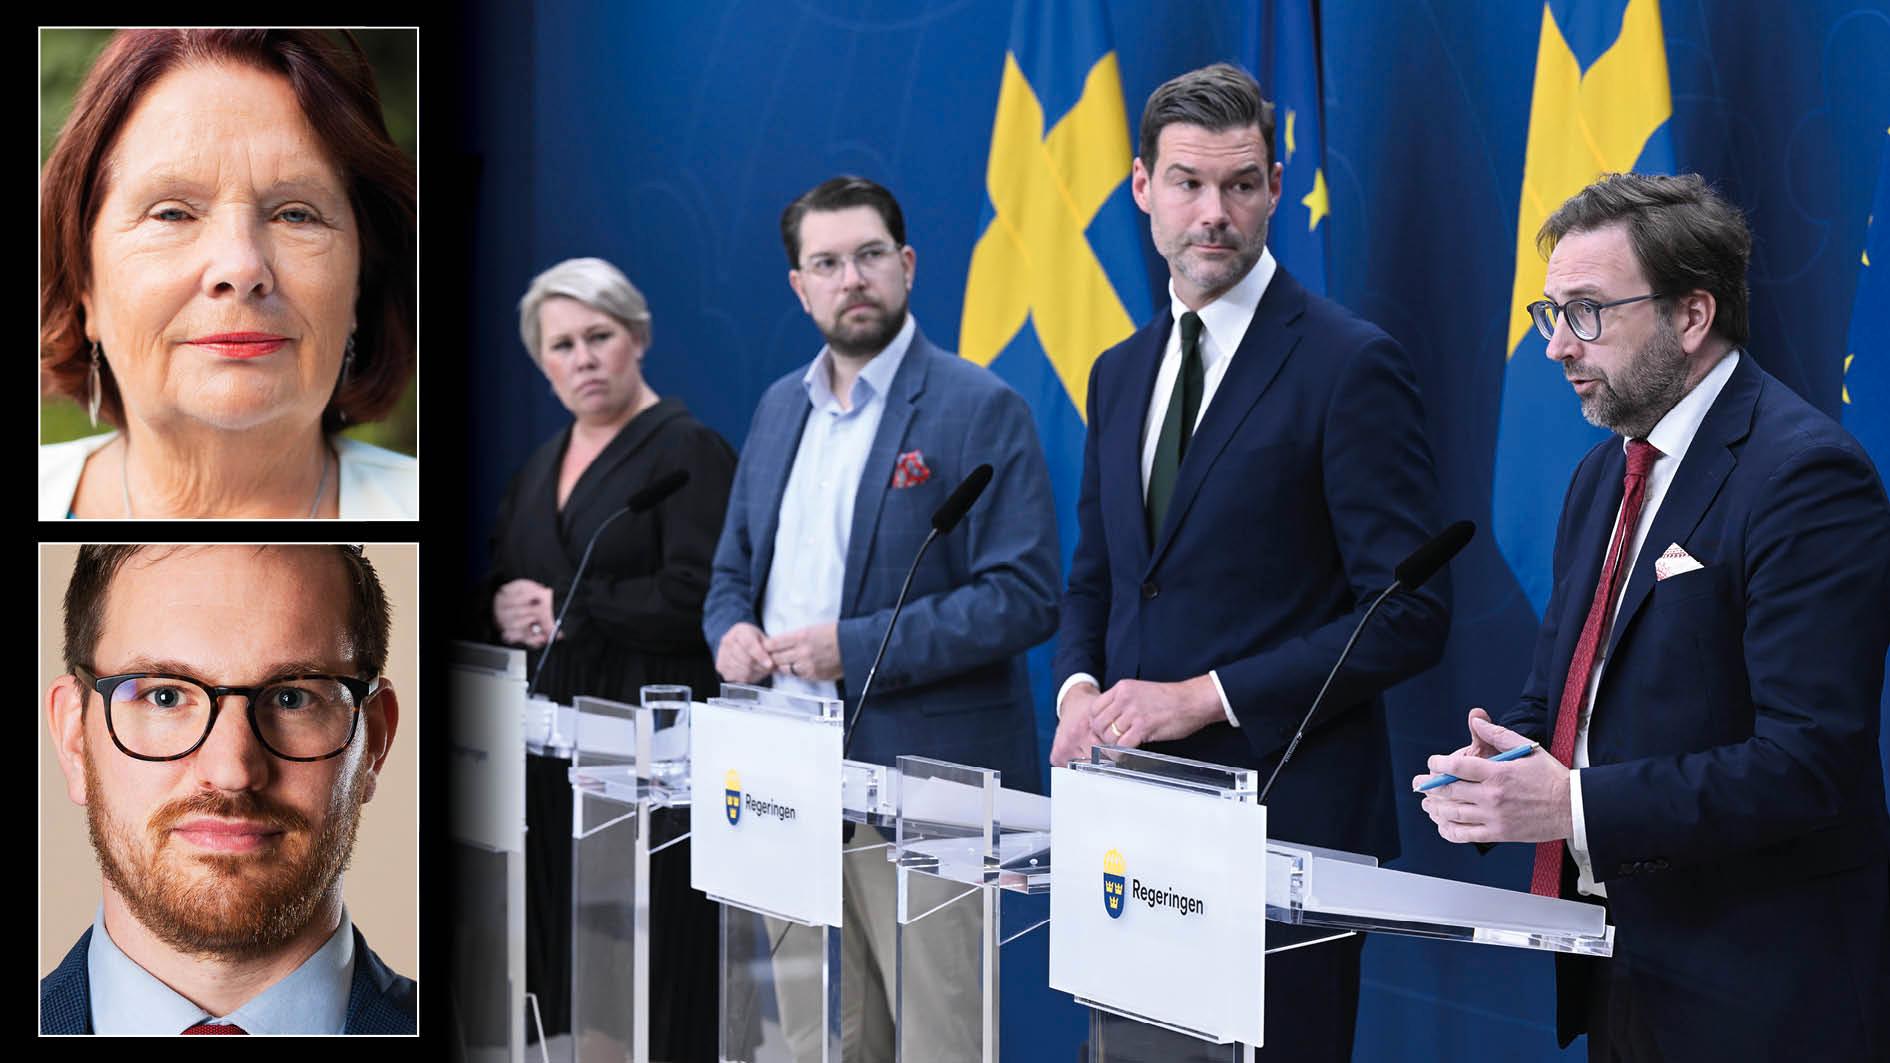 I stället för att strypa biståndet, borde Sverige nu öka biståndet till Palestina för att rädda liv, bidra till fred och försvaga extremisternas position, skriver Lotta Johnsson Fornarve och Håkan Svenneling, Vänsterpartiet.